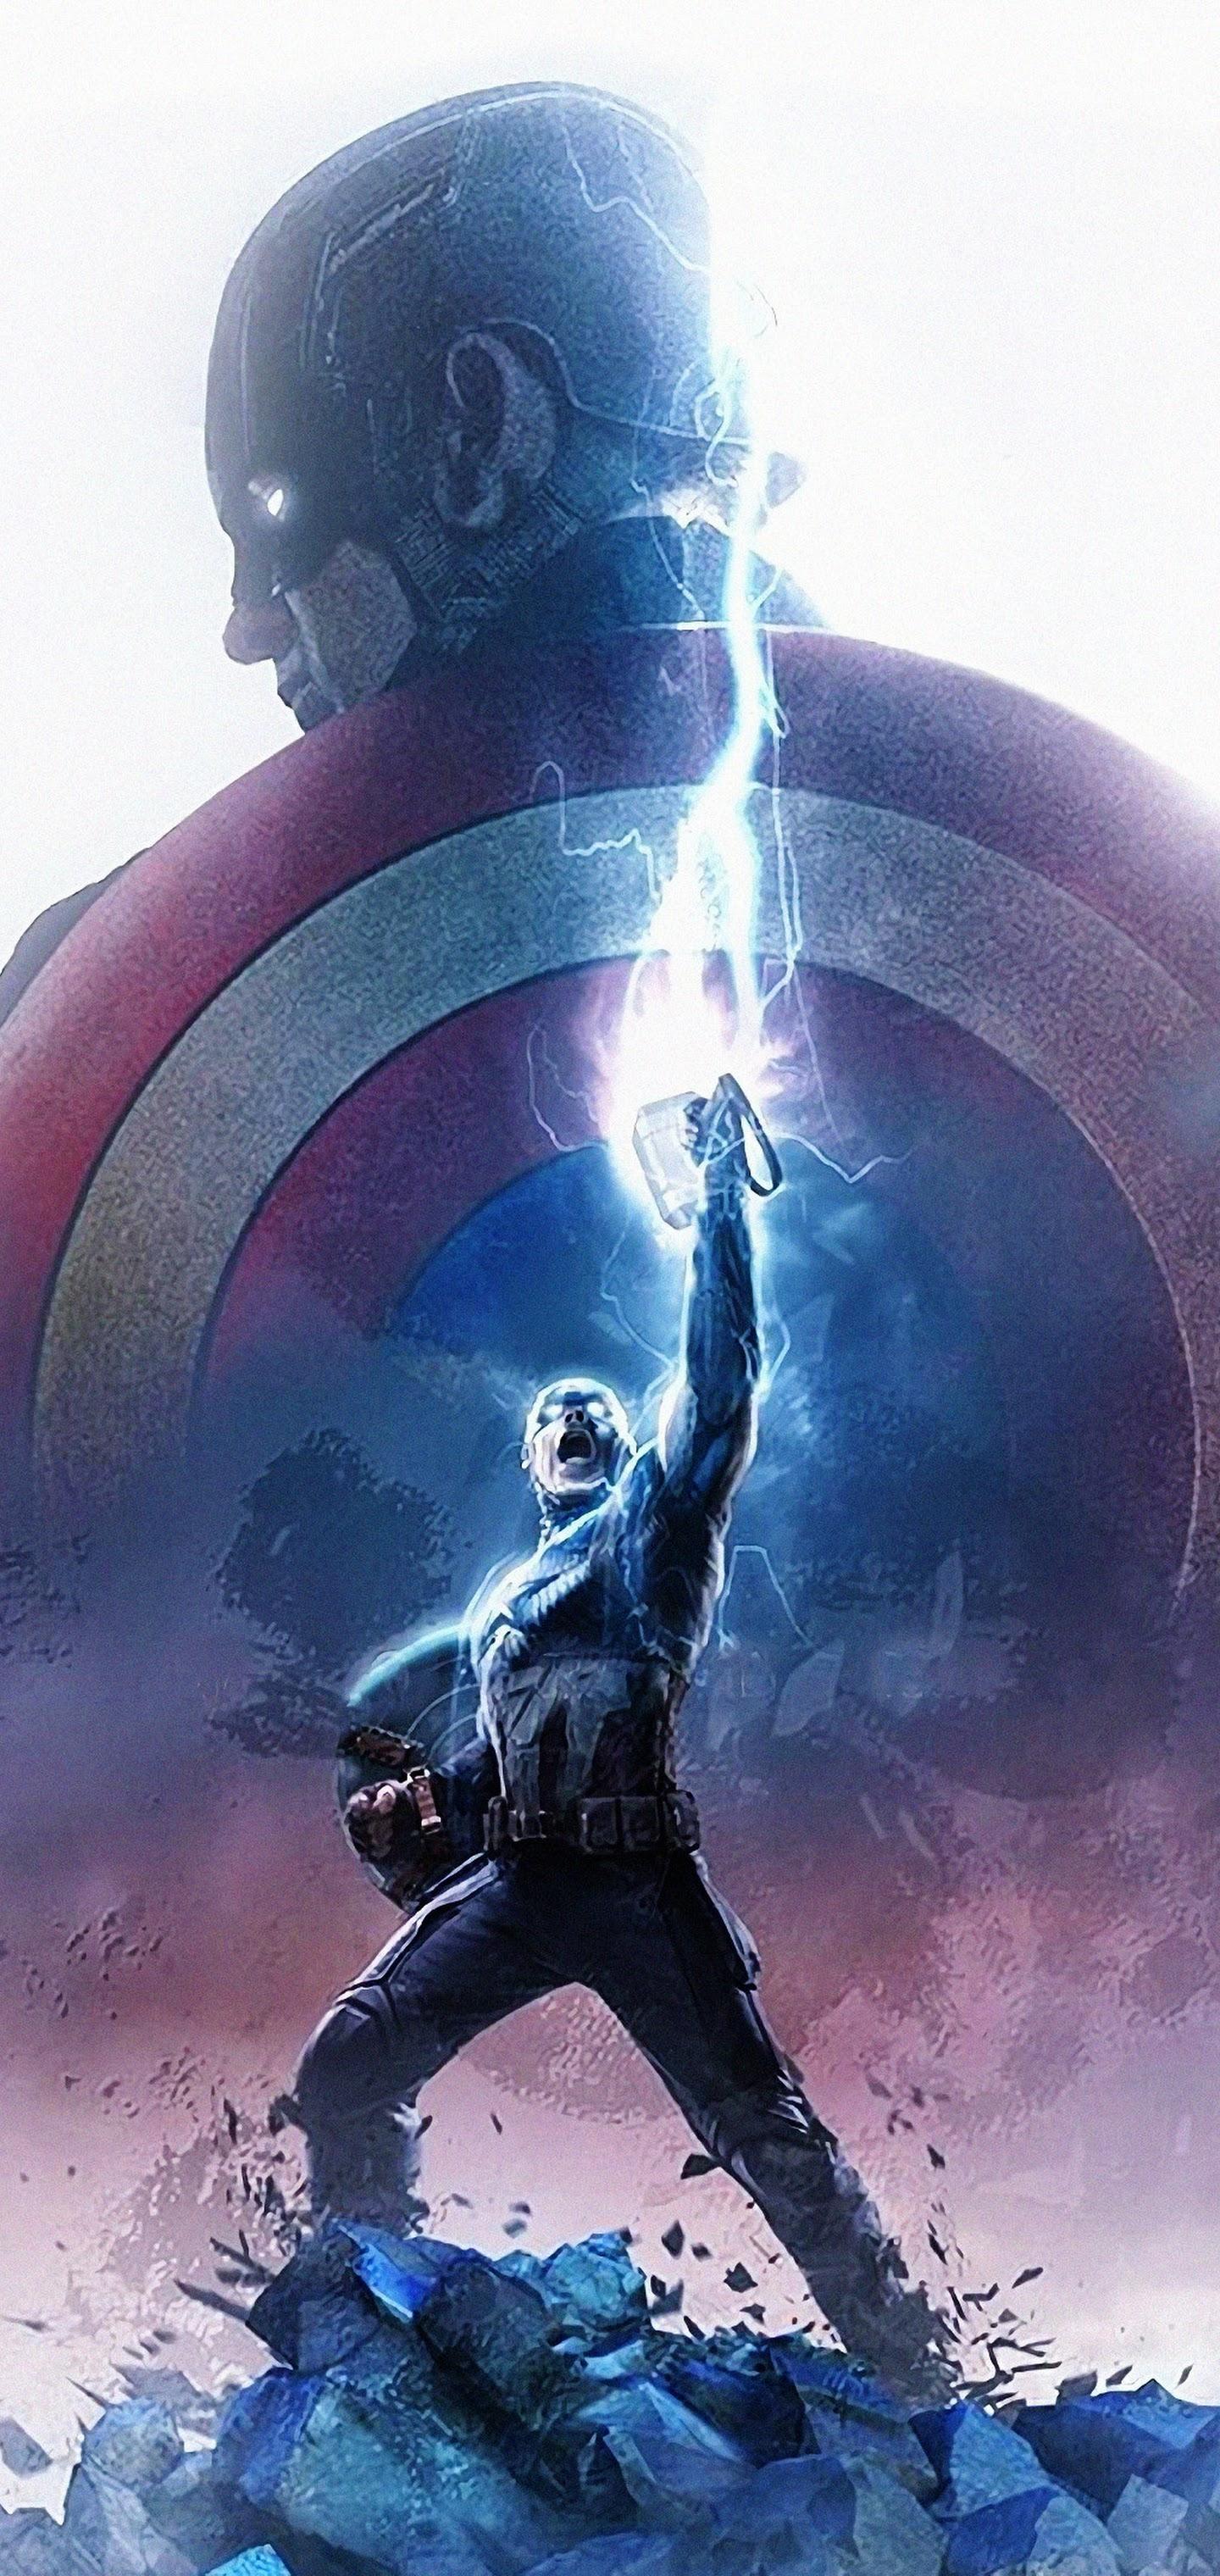 Avengers: Endgame Captain America Thor Hammer Lightning 4K